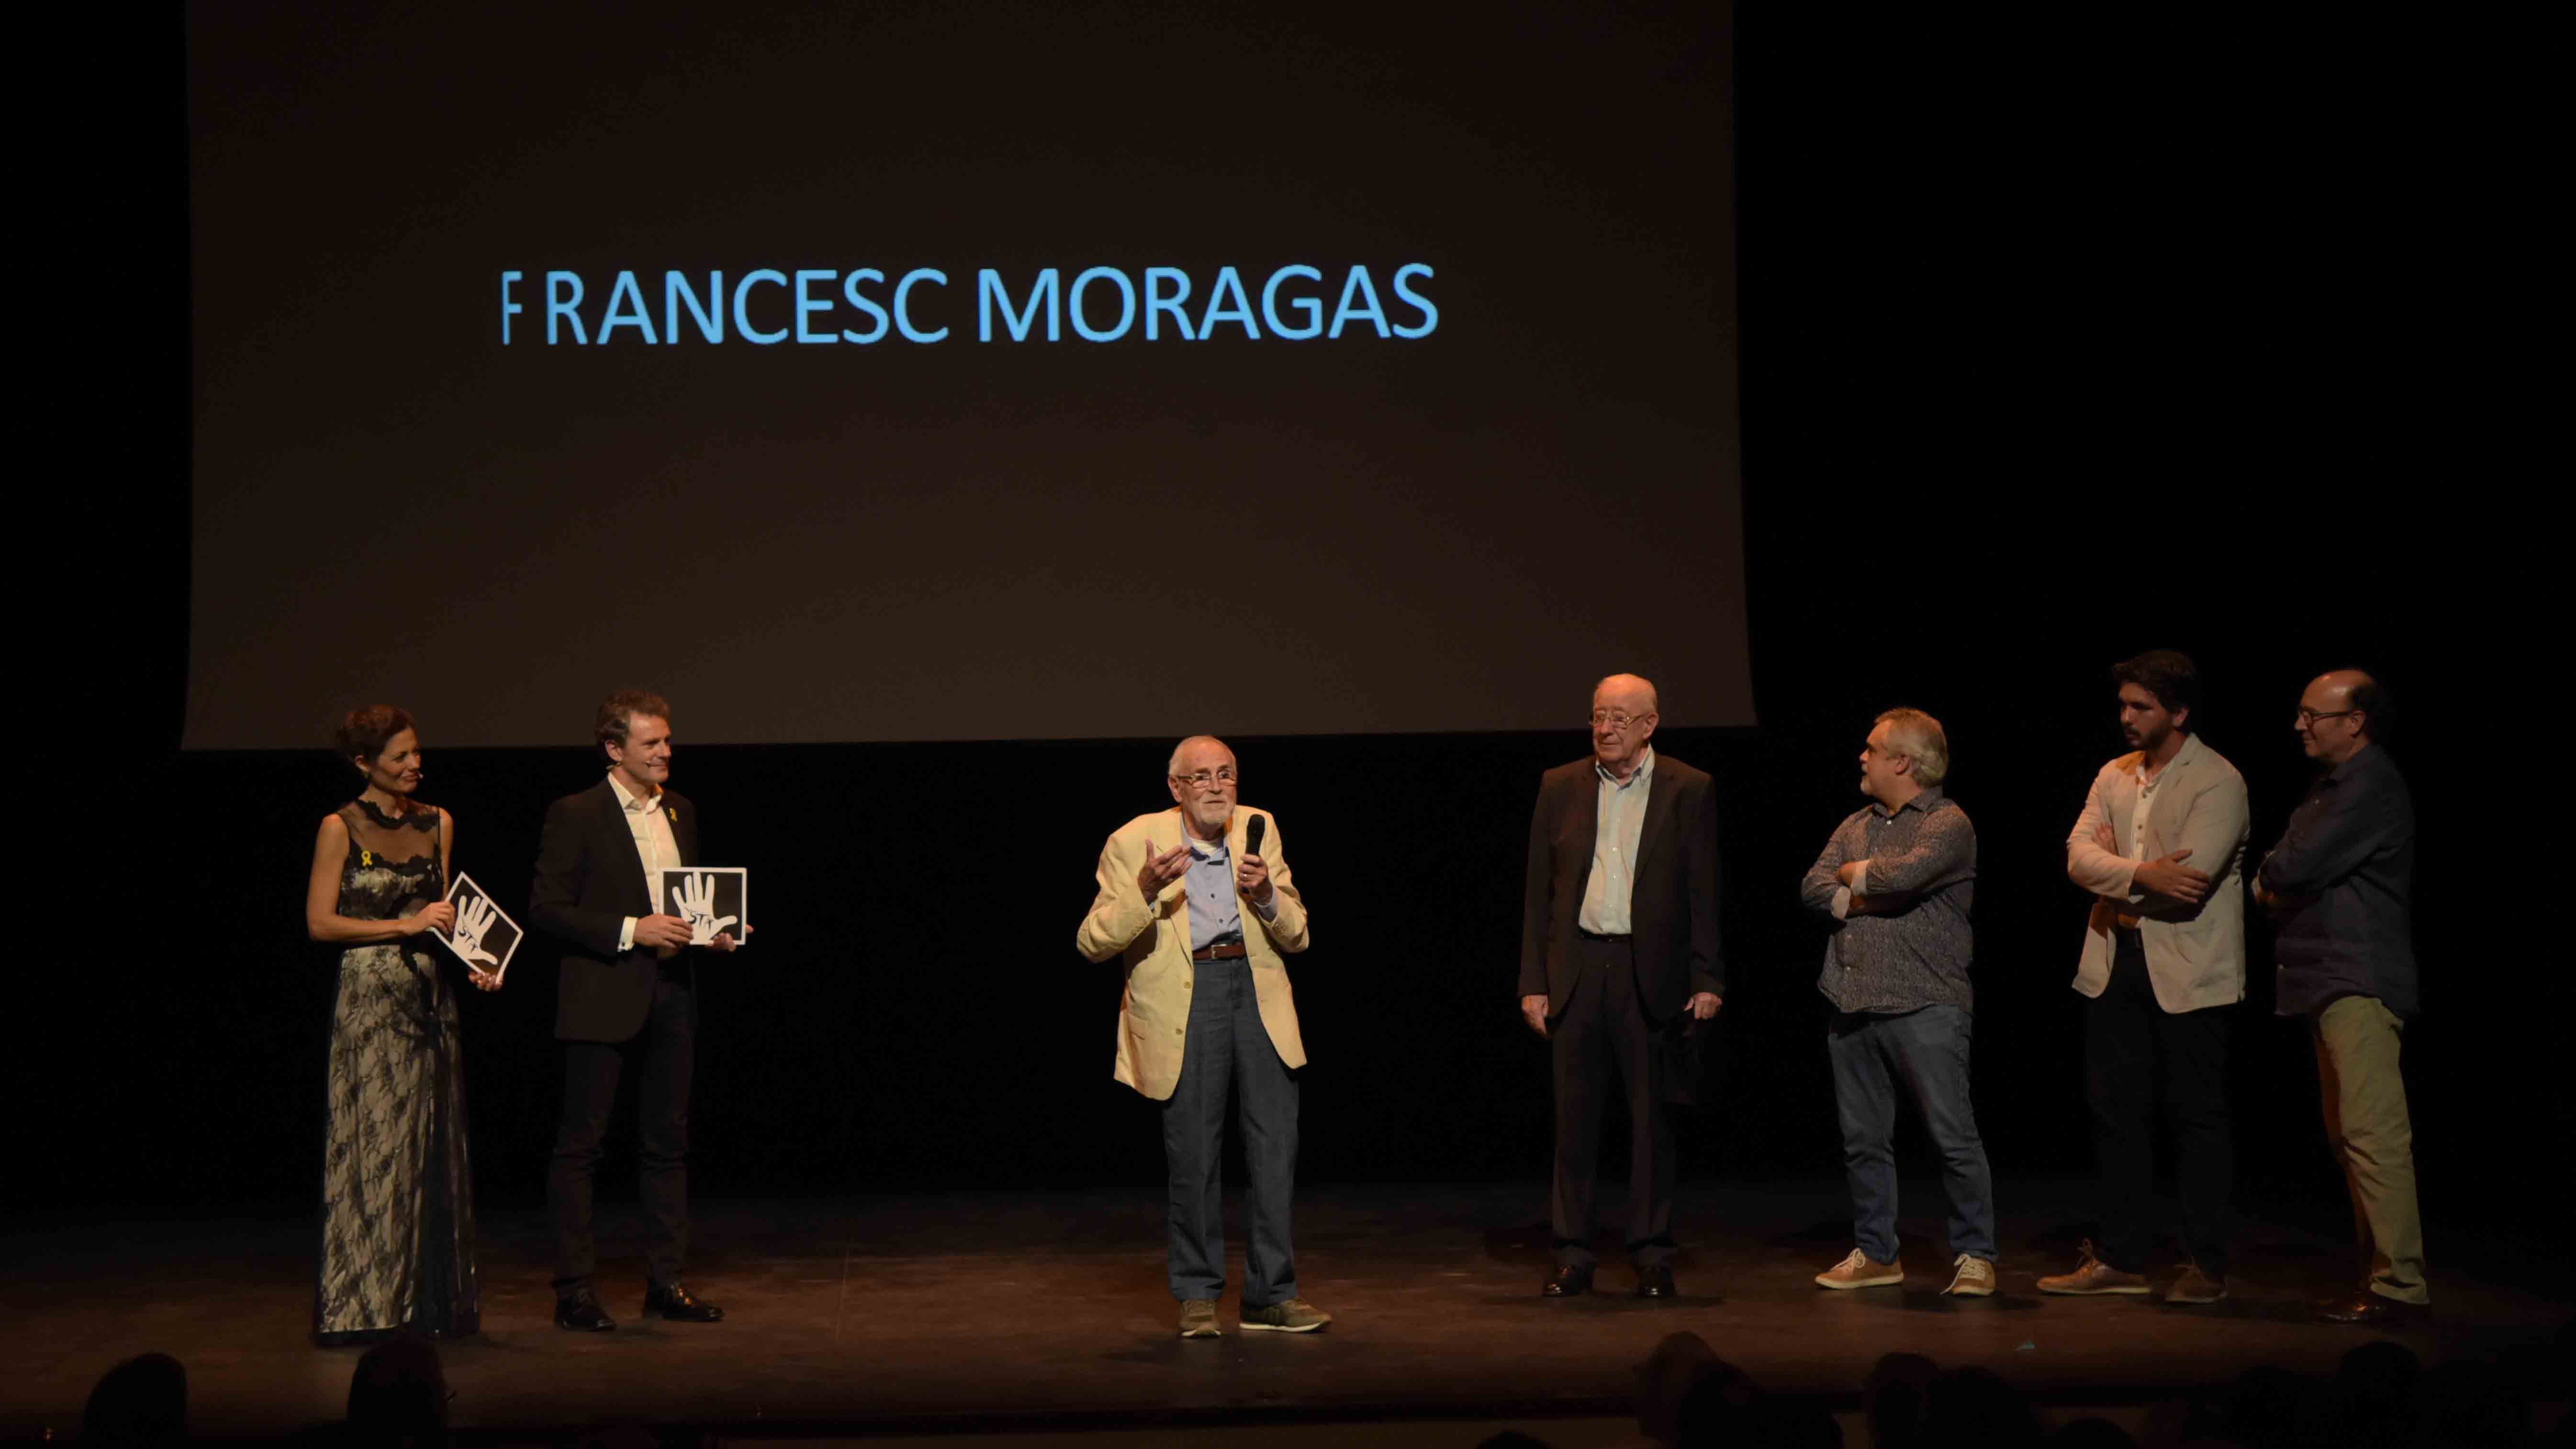 Moment en que Francesc Moragas rep el premi | Roger Benet